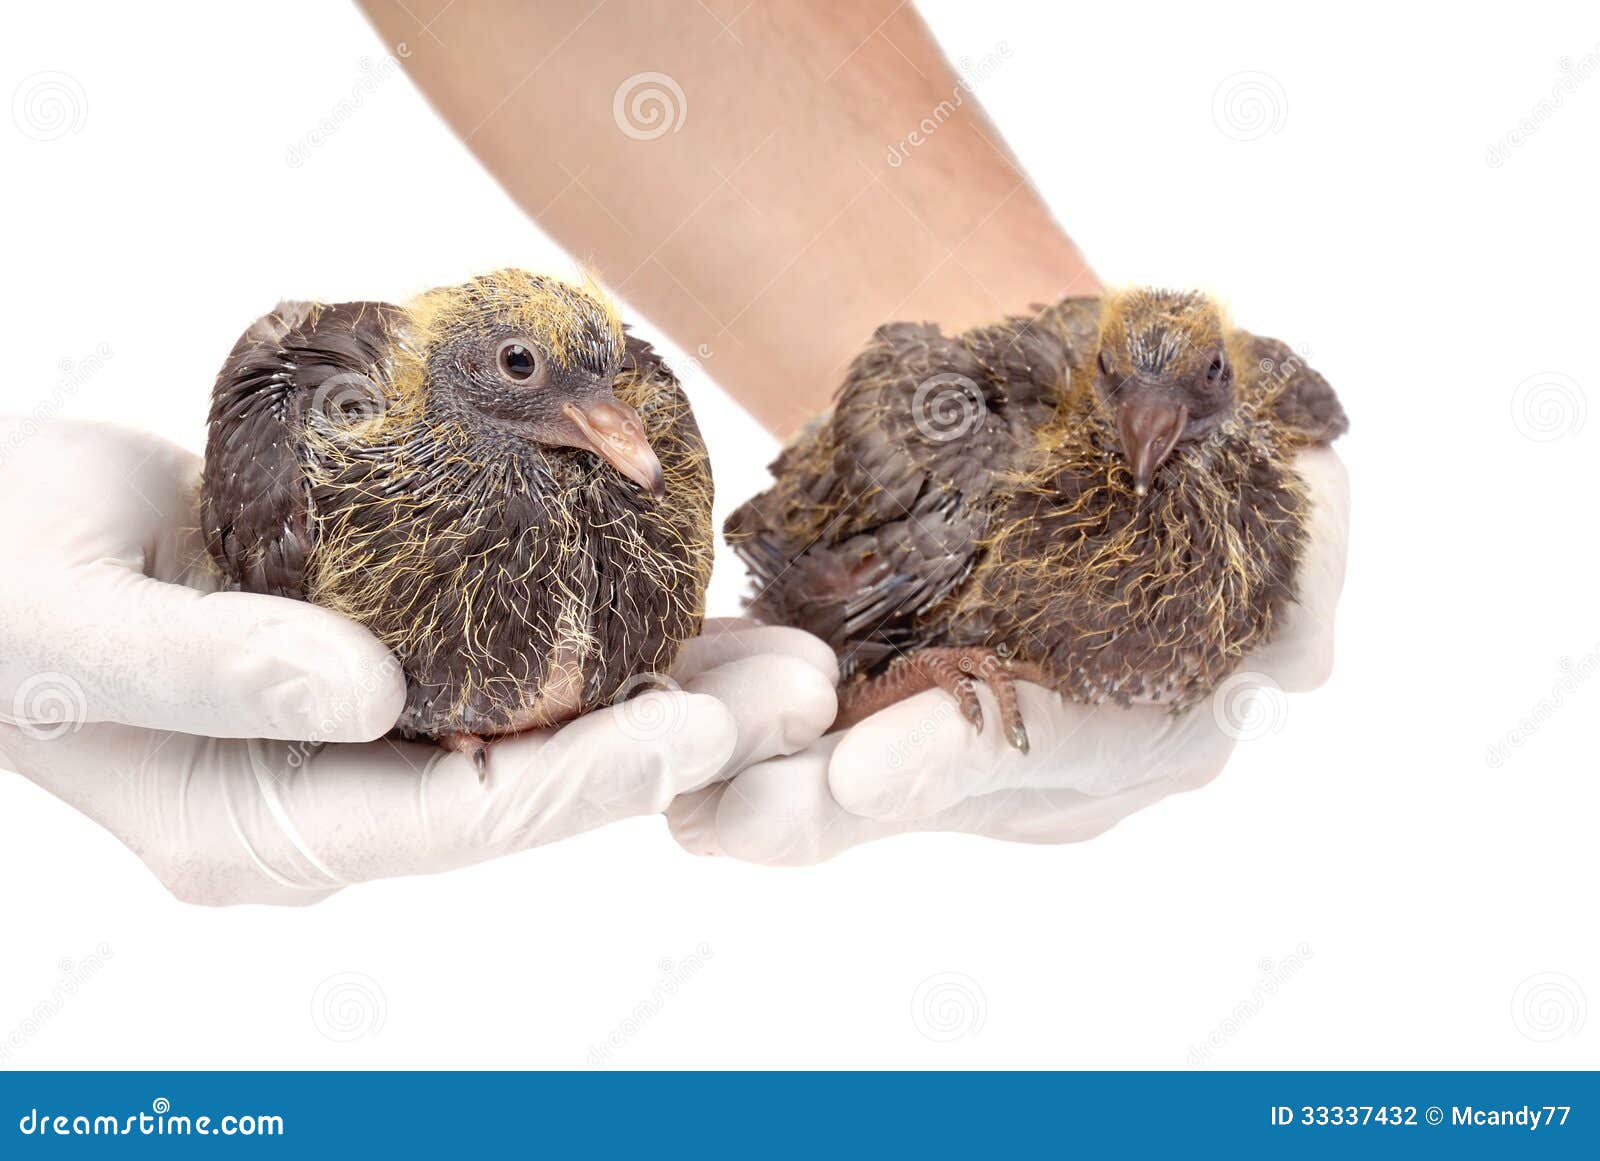 Junge Tauben in den Händen des Tierarztes. Paare von jungen Tauben in den Händen des Tierarztes lokalisiert auf weißem Hintergrund